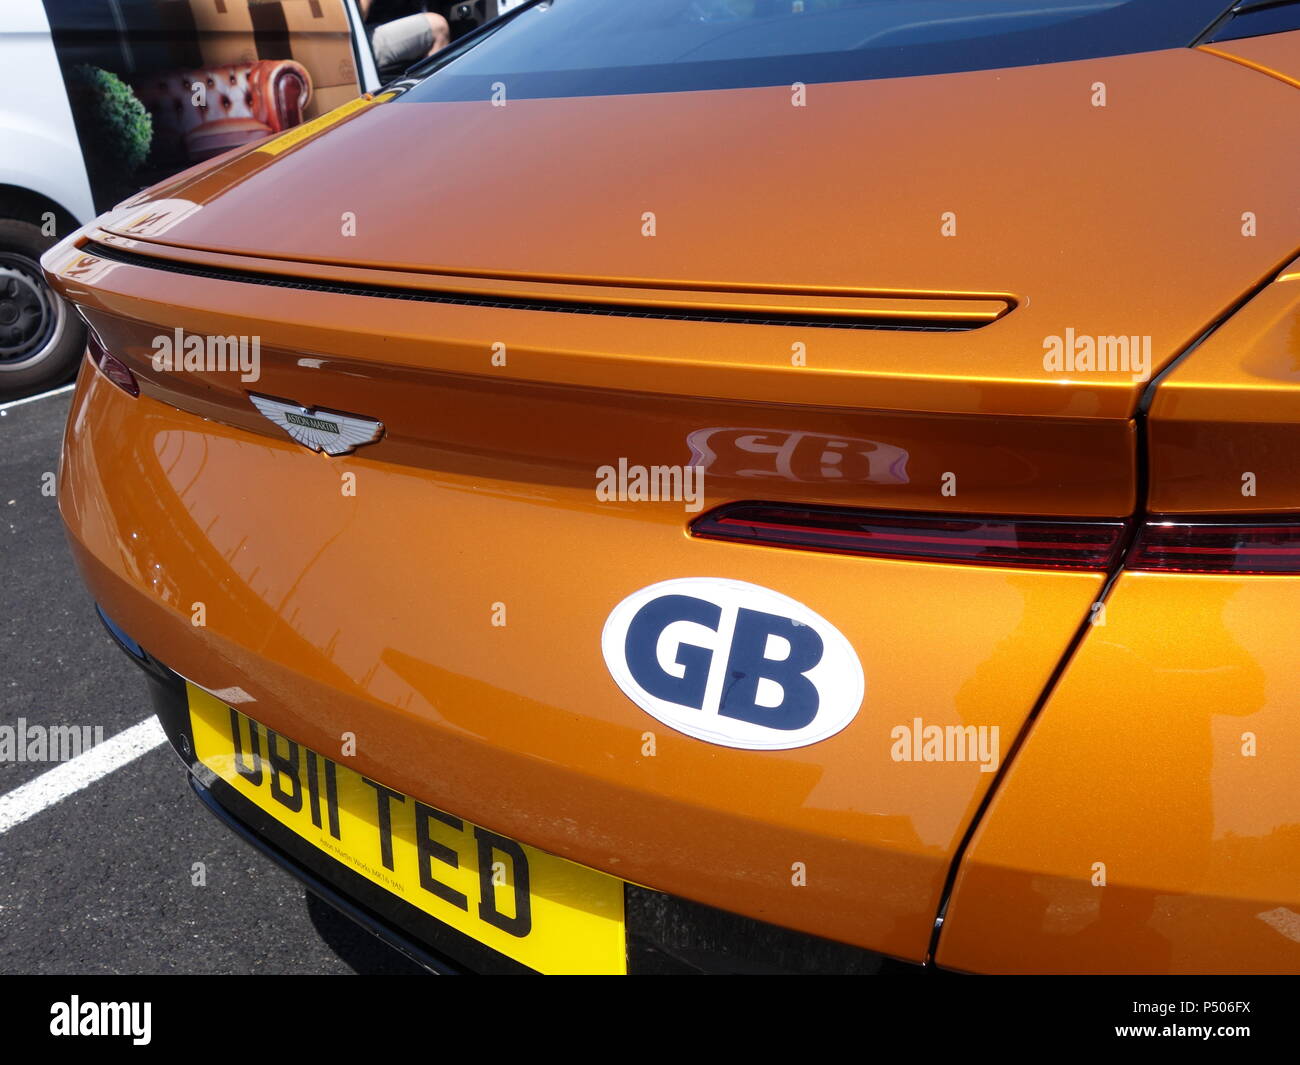 GB piastra come visto su un inglese Aston Martin DB11 vettura sportiva in Le Mans, Francia Foto Stock